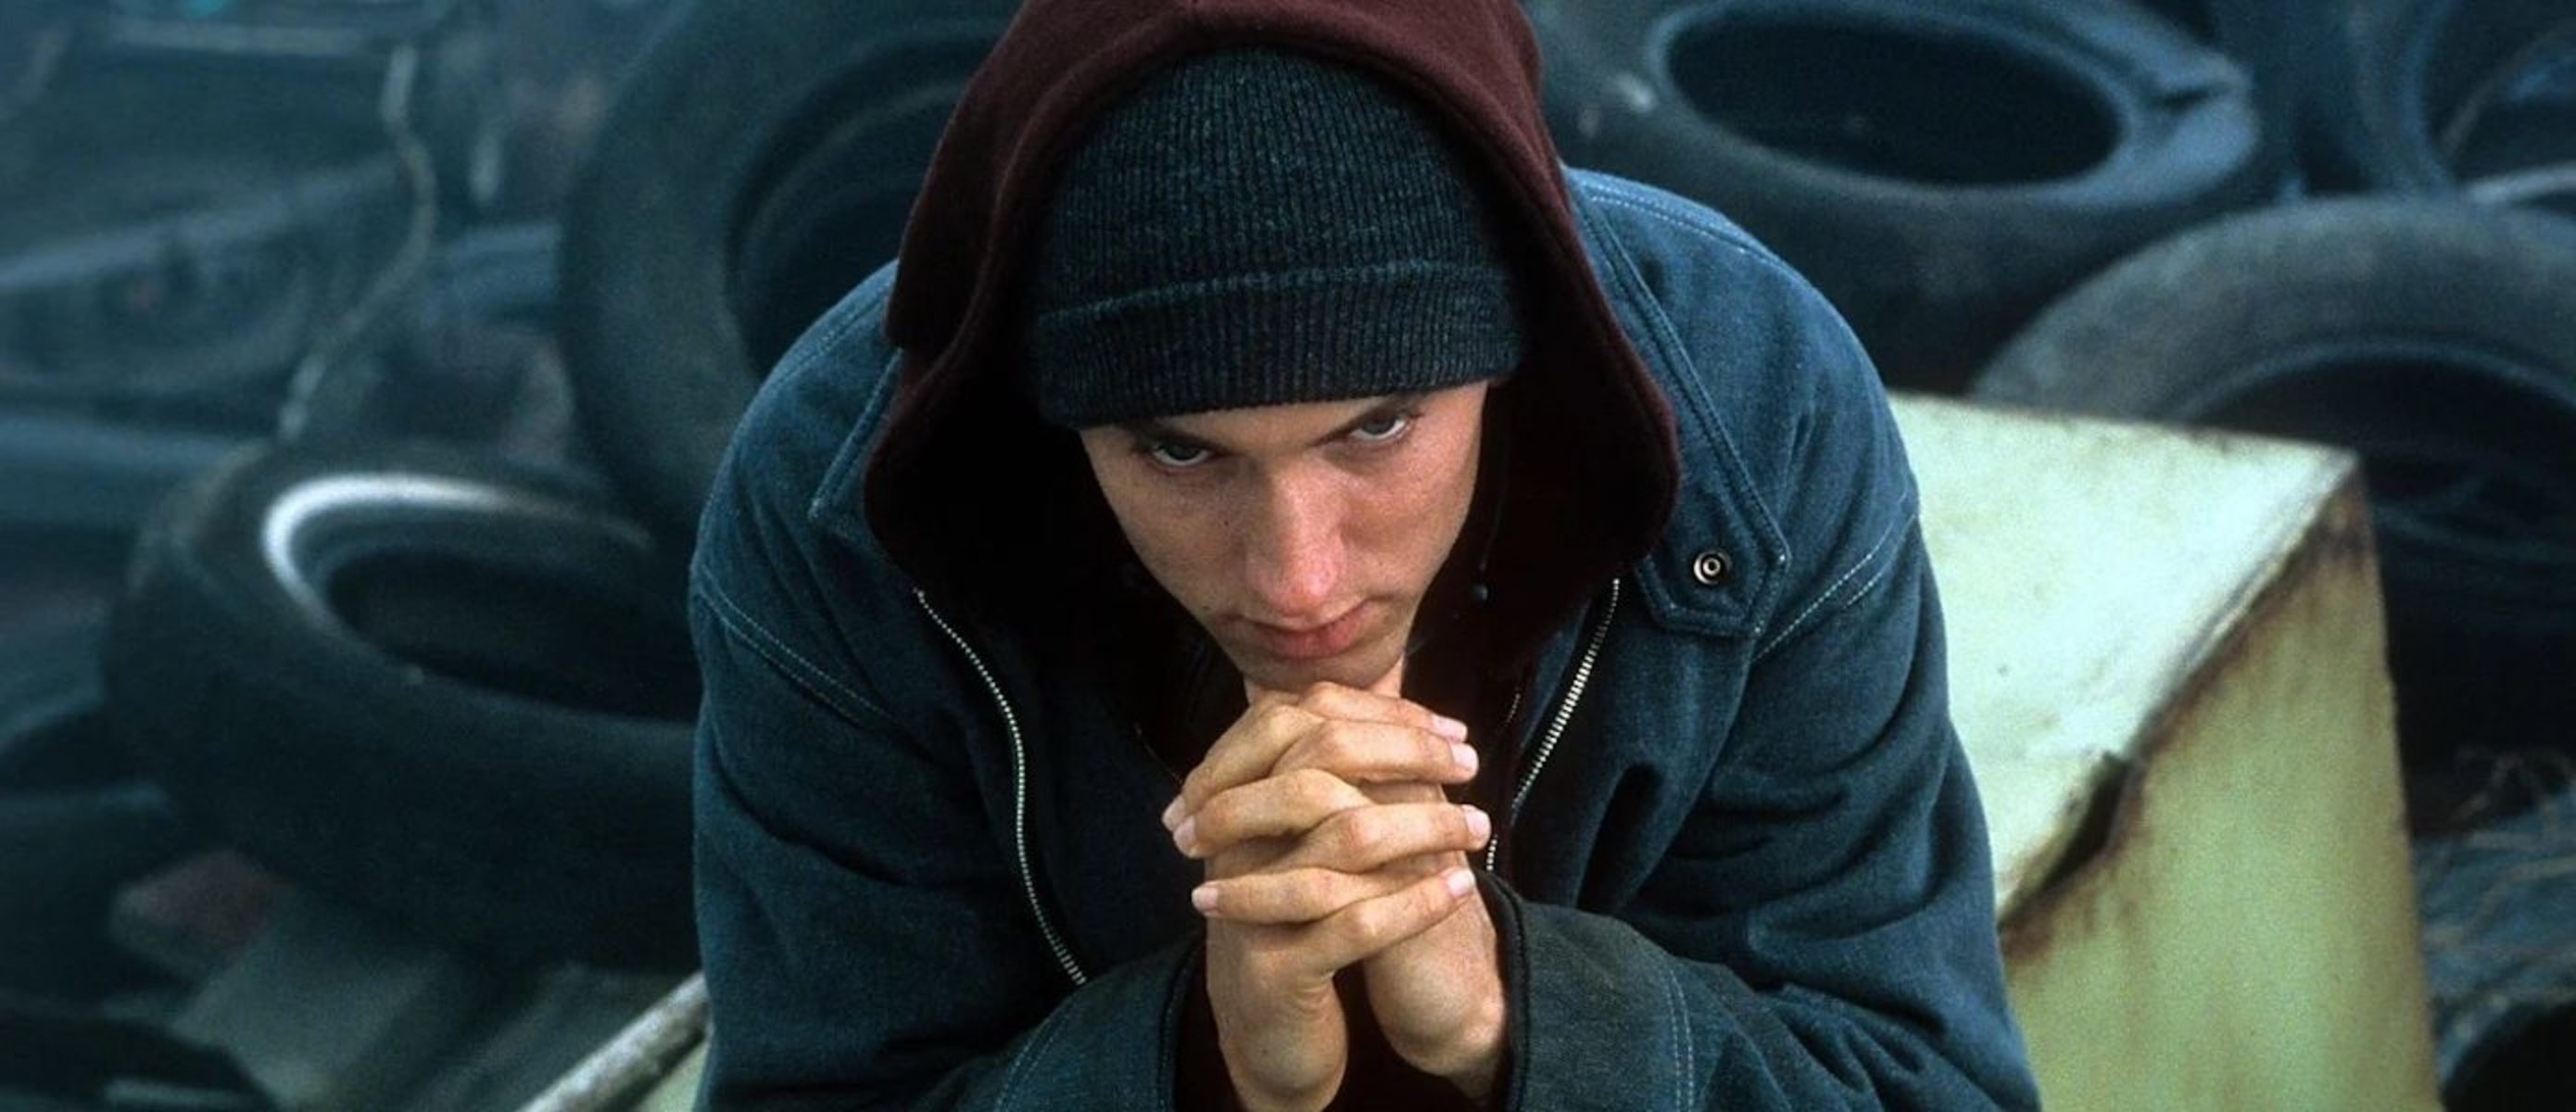 Eminem и 50 Cent снимут сериал по фильму «8 миля»